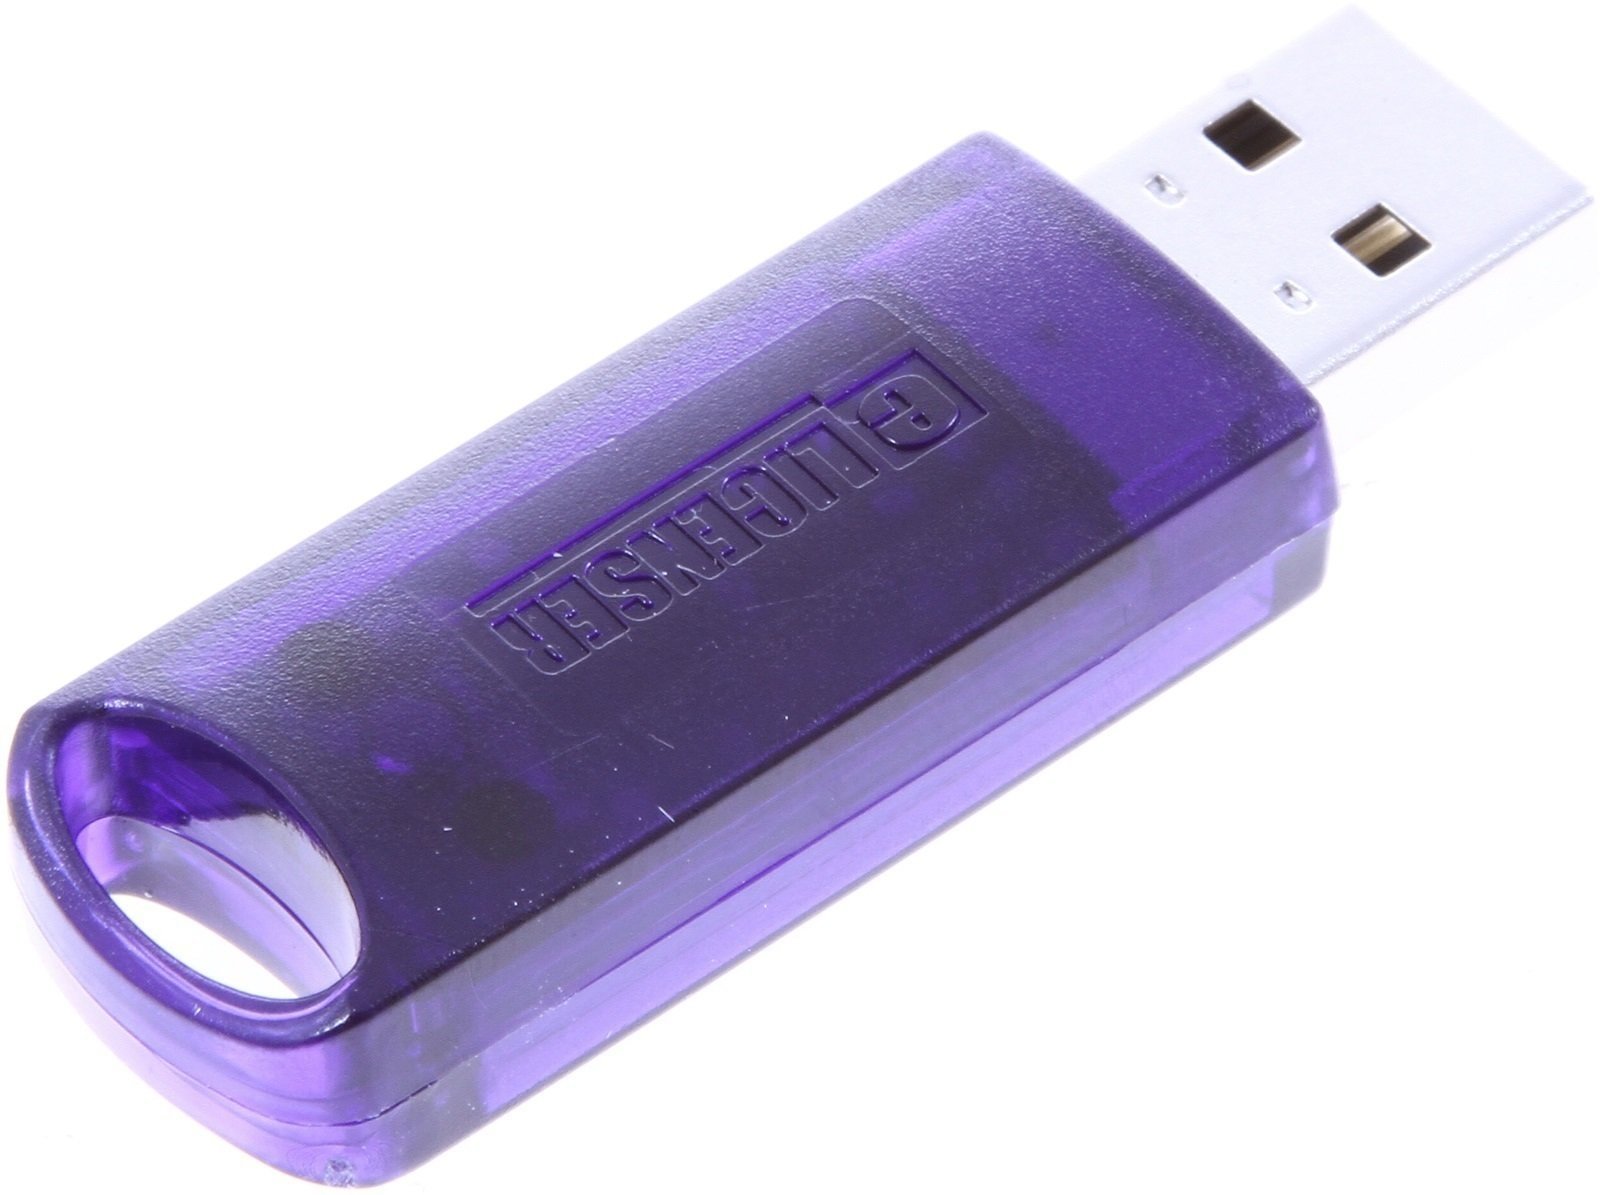 Licenční prvek Steinberg Key USB eLicenser